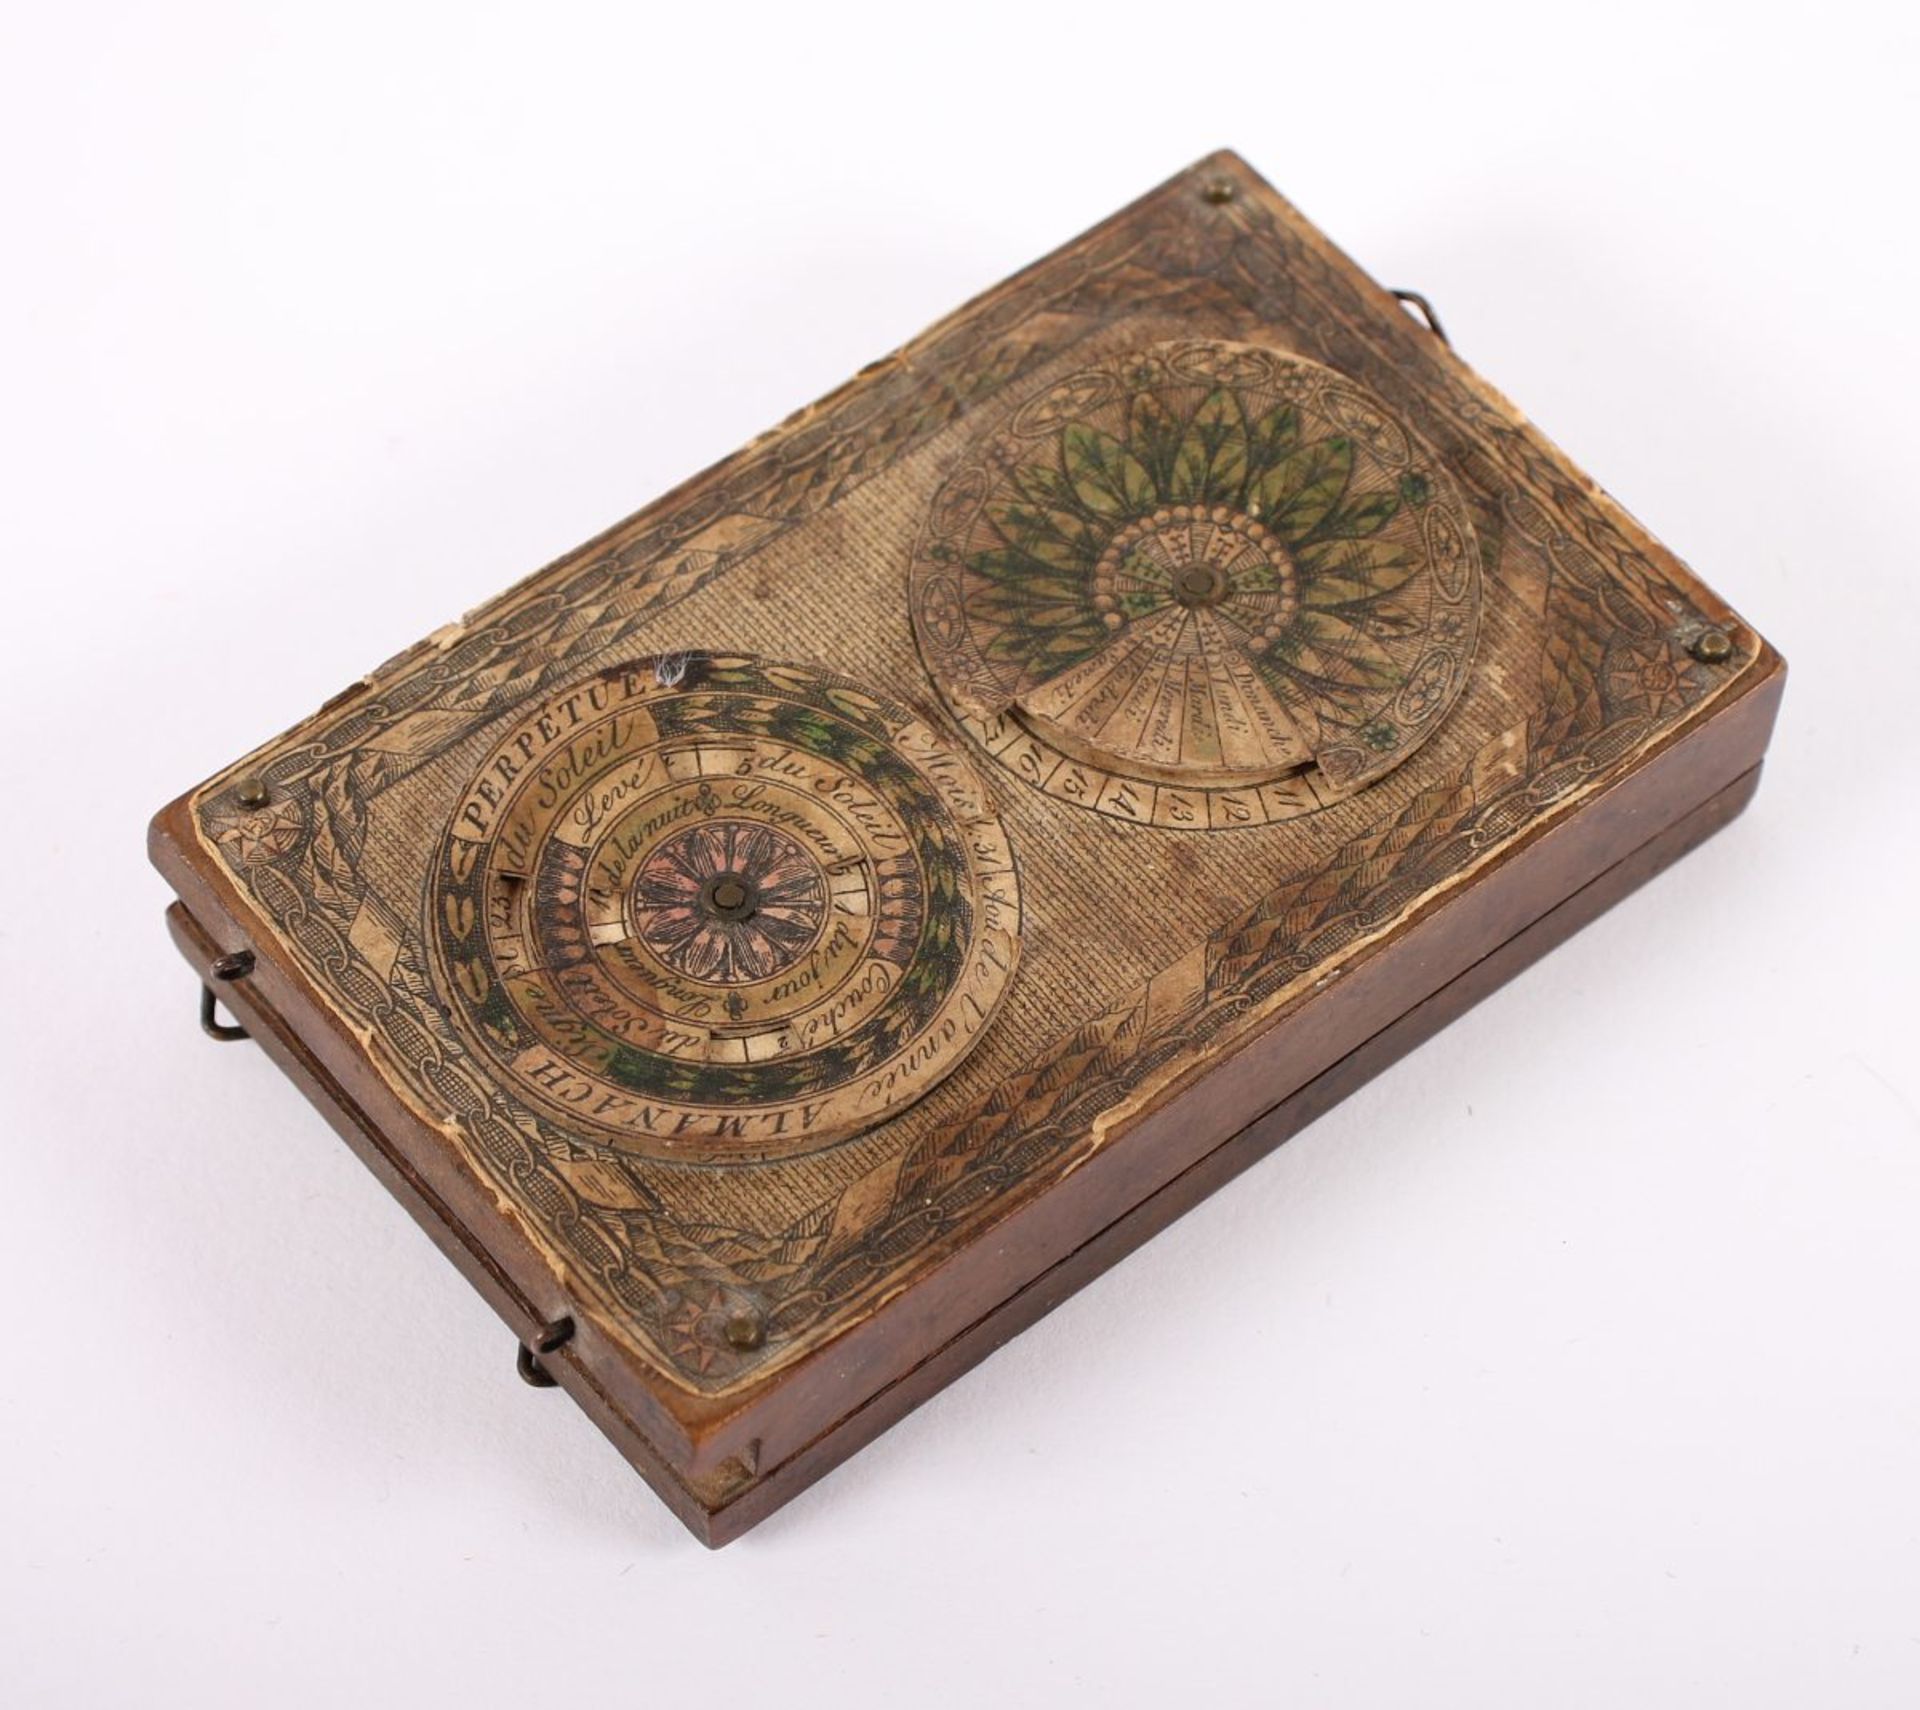 KLAPPSONNENUHR, Obstholz mit kolorierten Kupferstichauflagen, eingelassener Kompass, Fadengnomon - Bild 3 aus 3